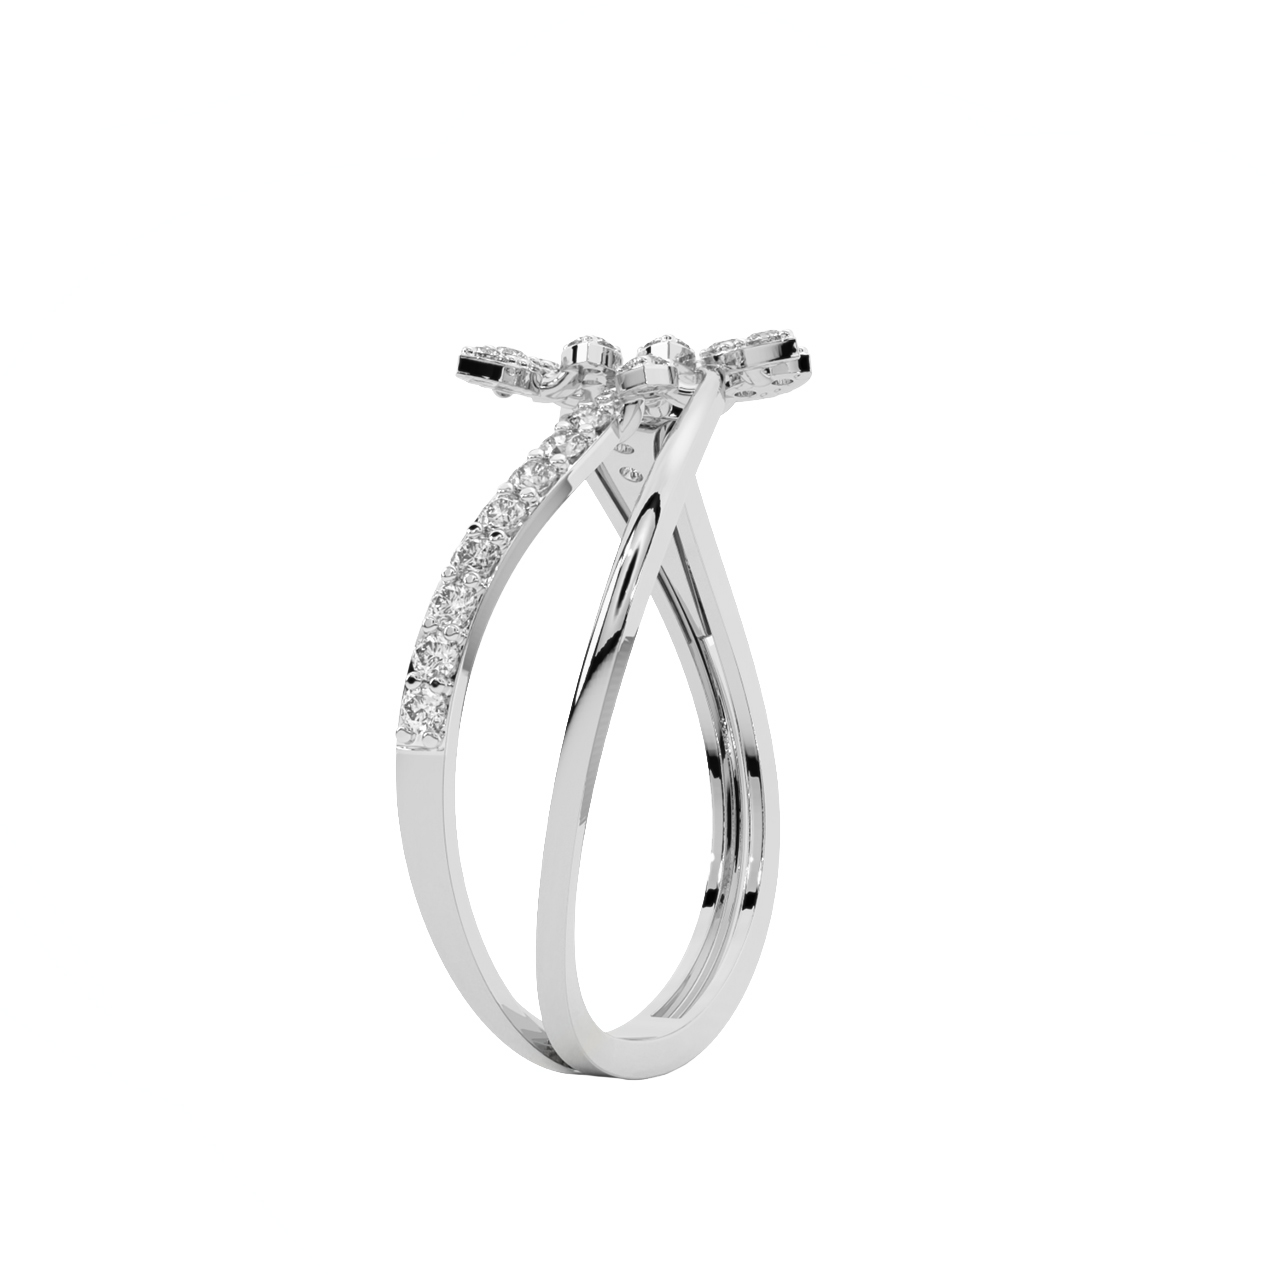 The Fern Coast Diamond Ring